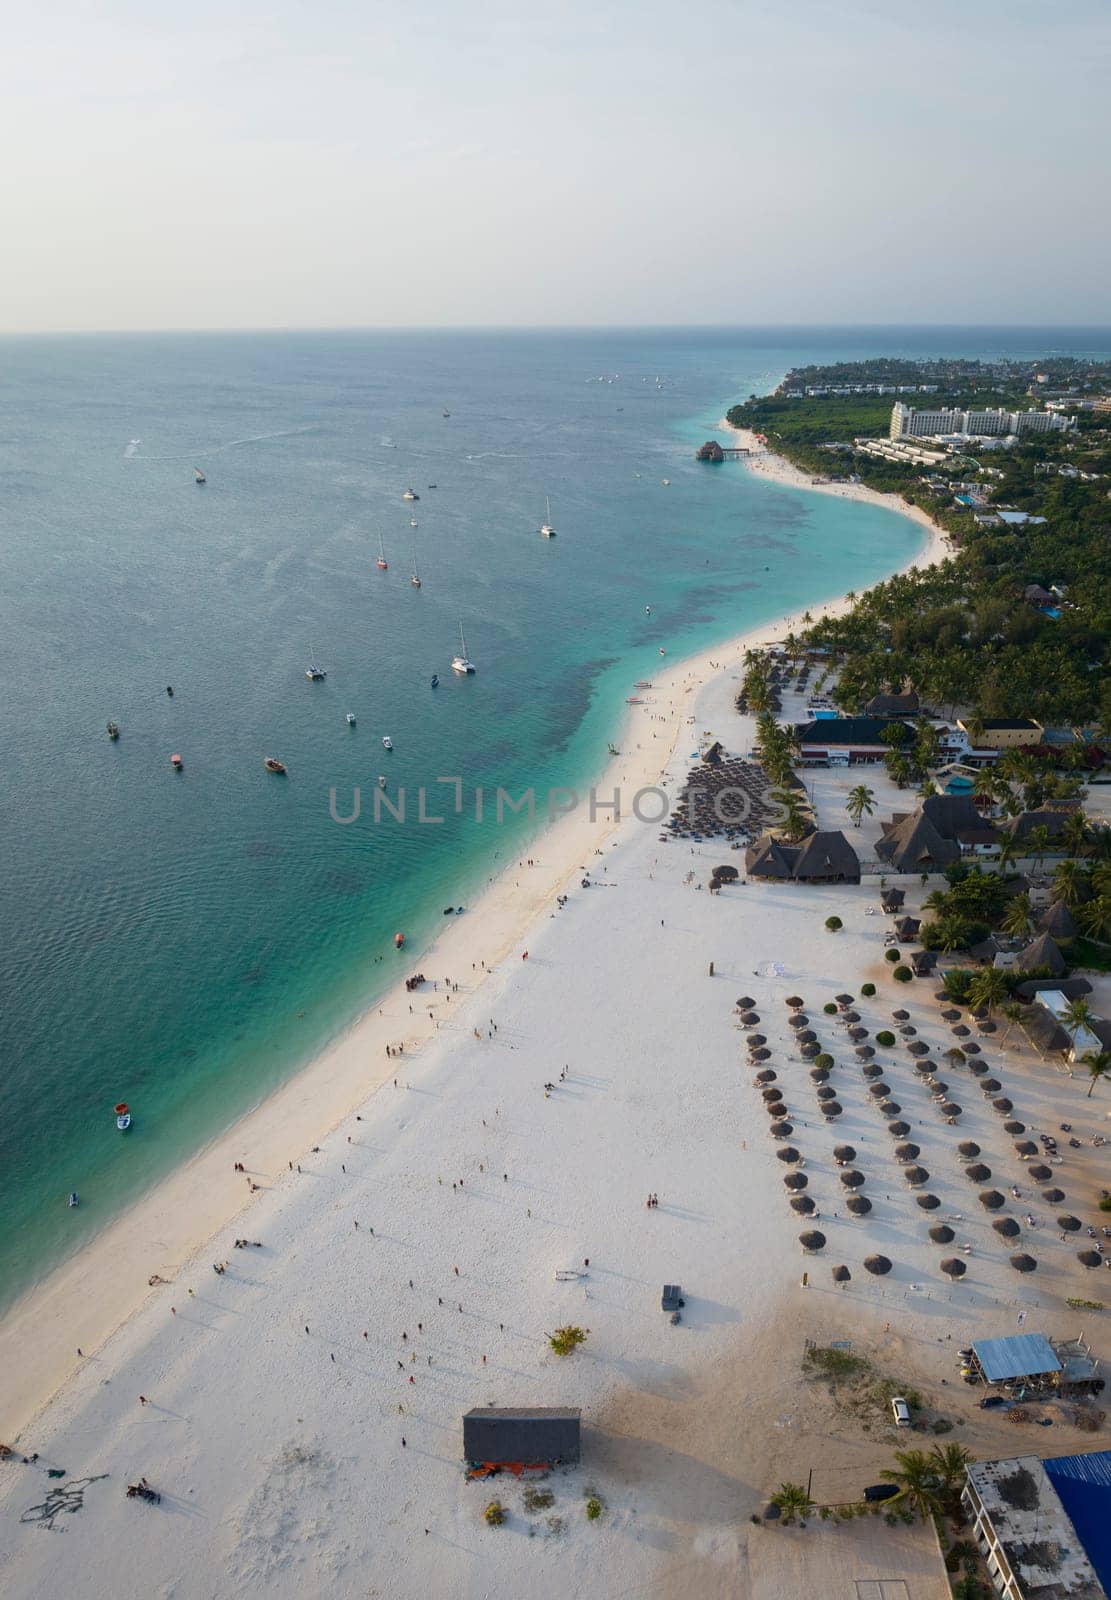 Panorama of sandy beach boats and clear green water in Zanzibar by Robertobinetti70